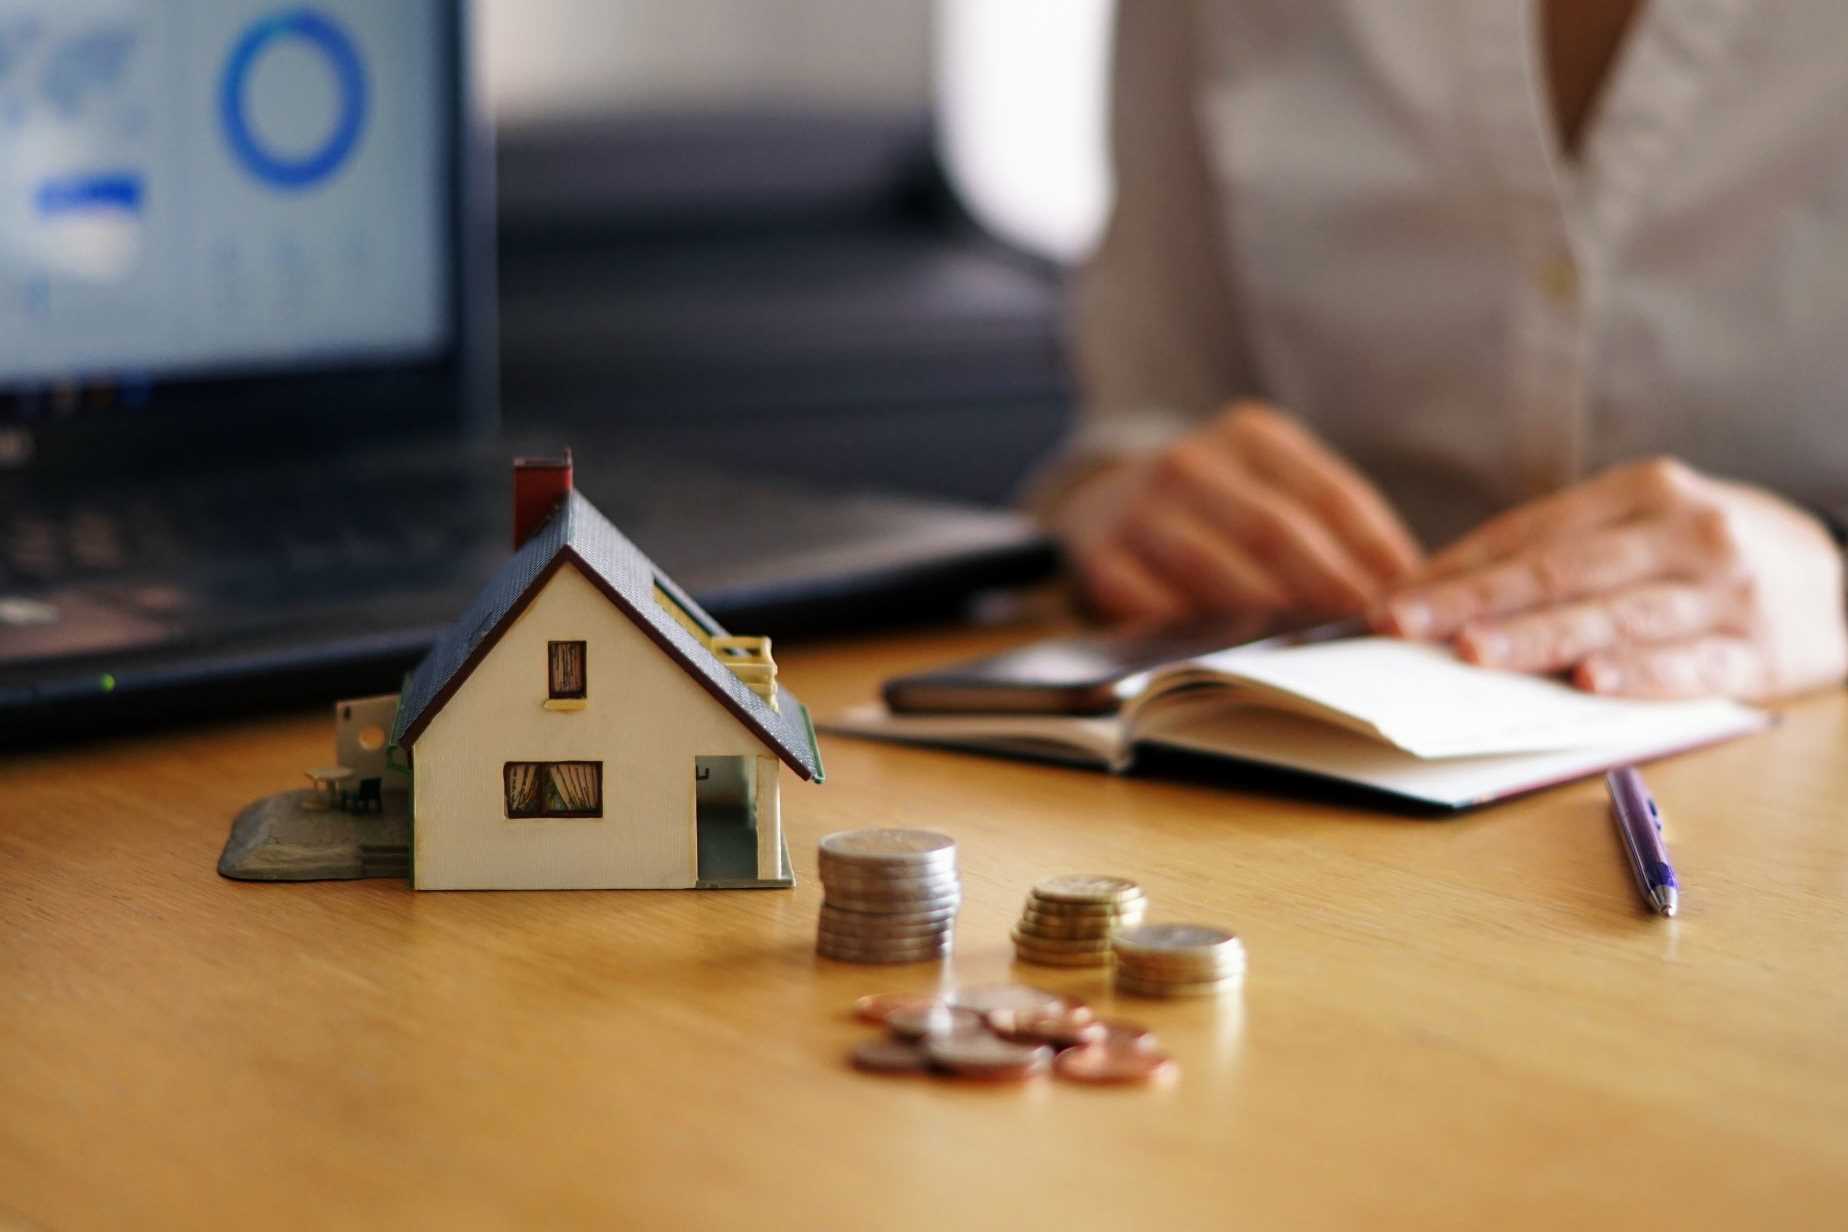 Làm thế nào để mua nhà trong thời đại lãi suất tăng cao? Hãy xem 5 cách đối phó mà không gây hại cho bản thân - Ảnh 1.